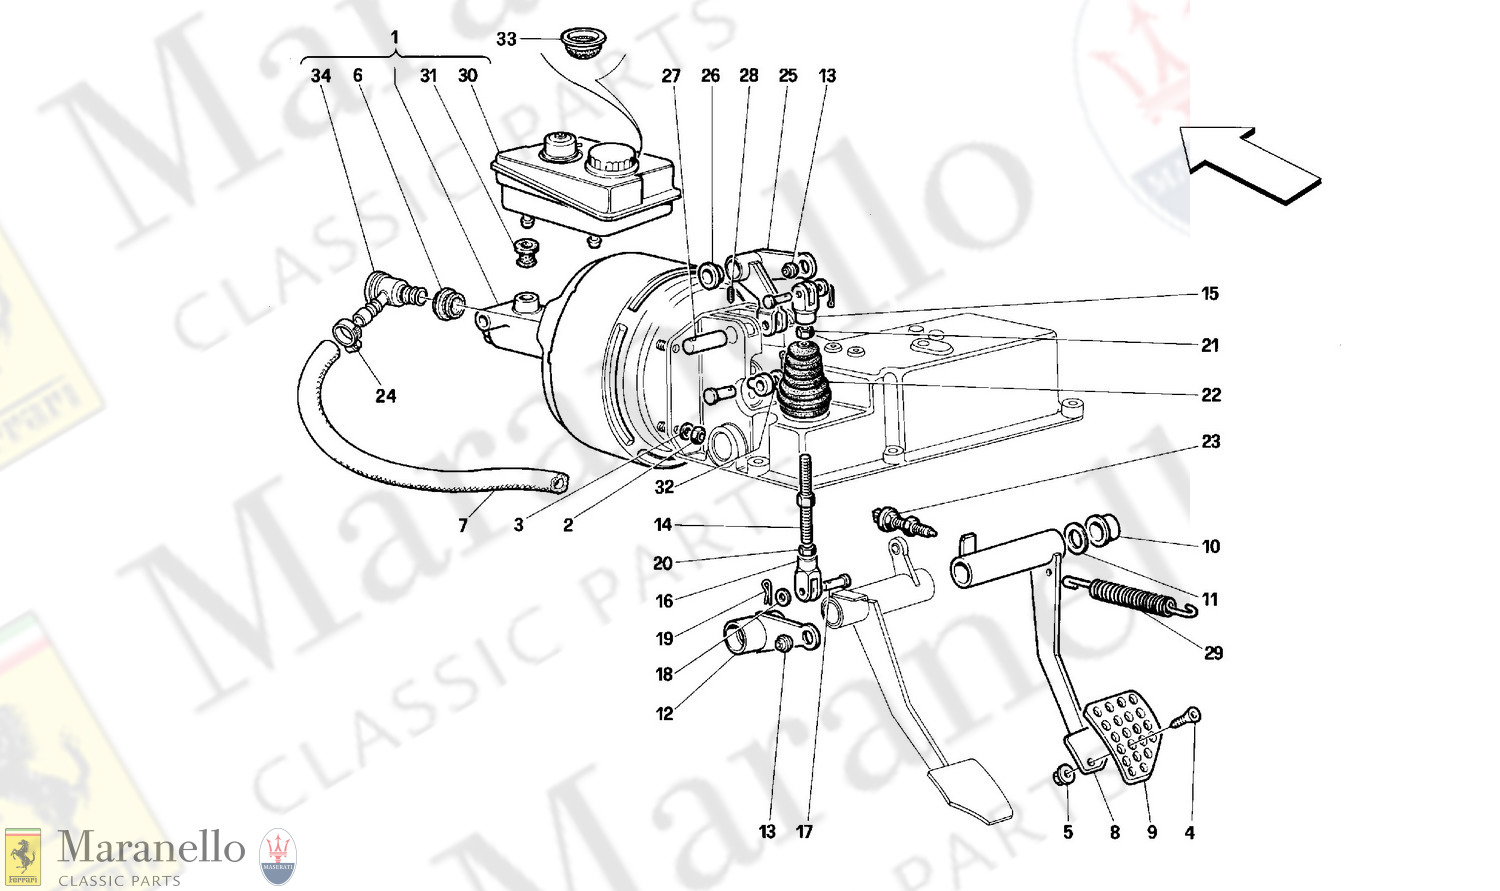 036 - Brake Hydraulic System - Lhd